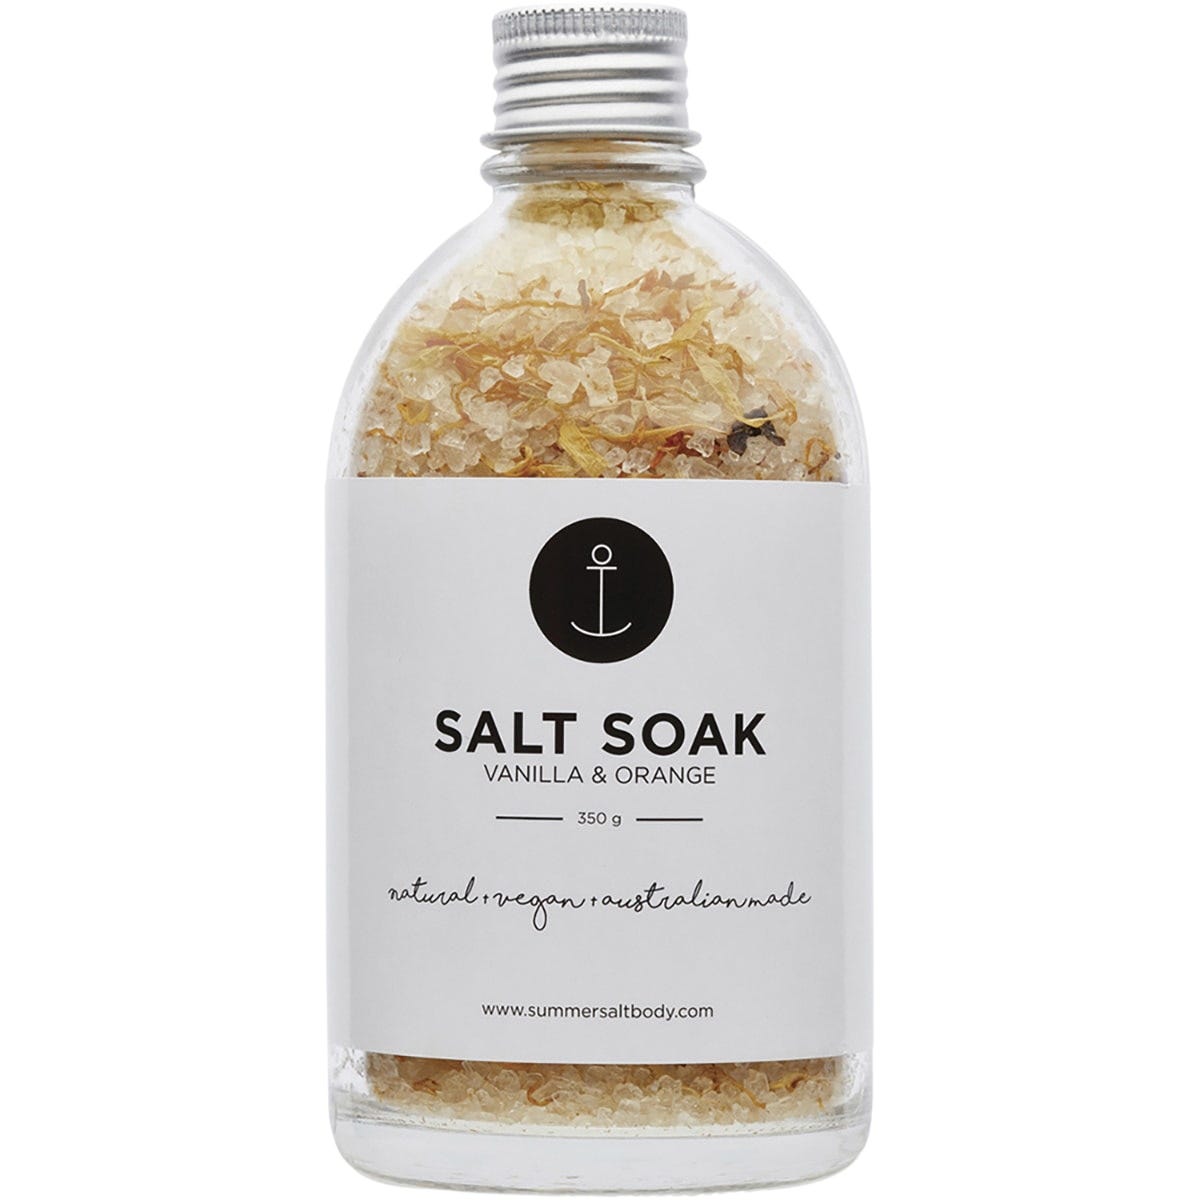 Summer Salt Body Salt Soak Vanilla & Sweet Orange